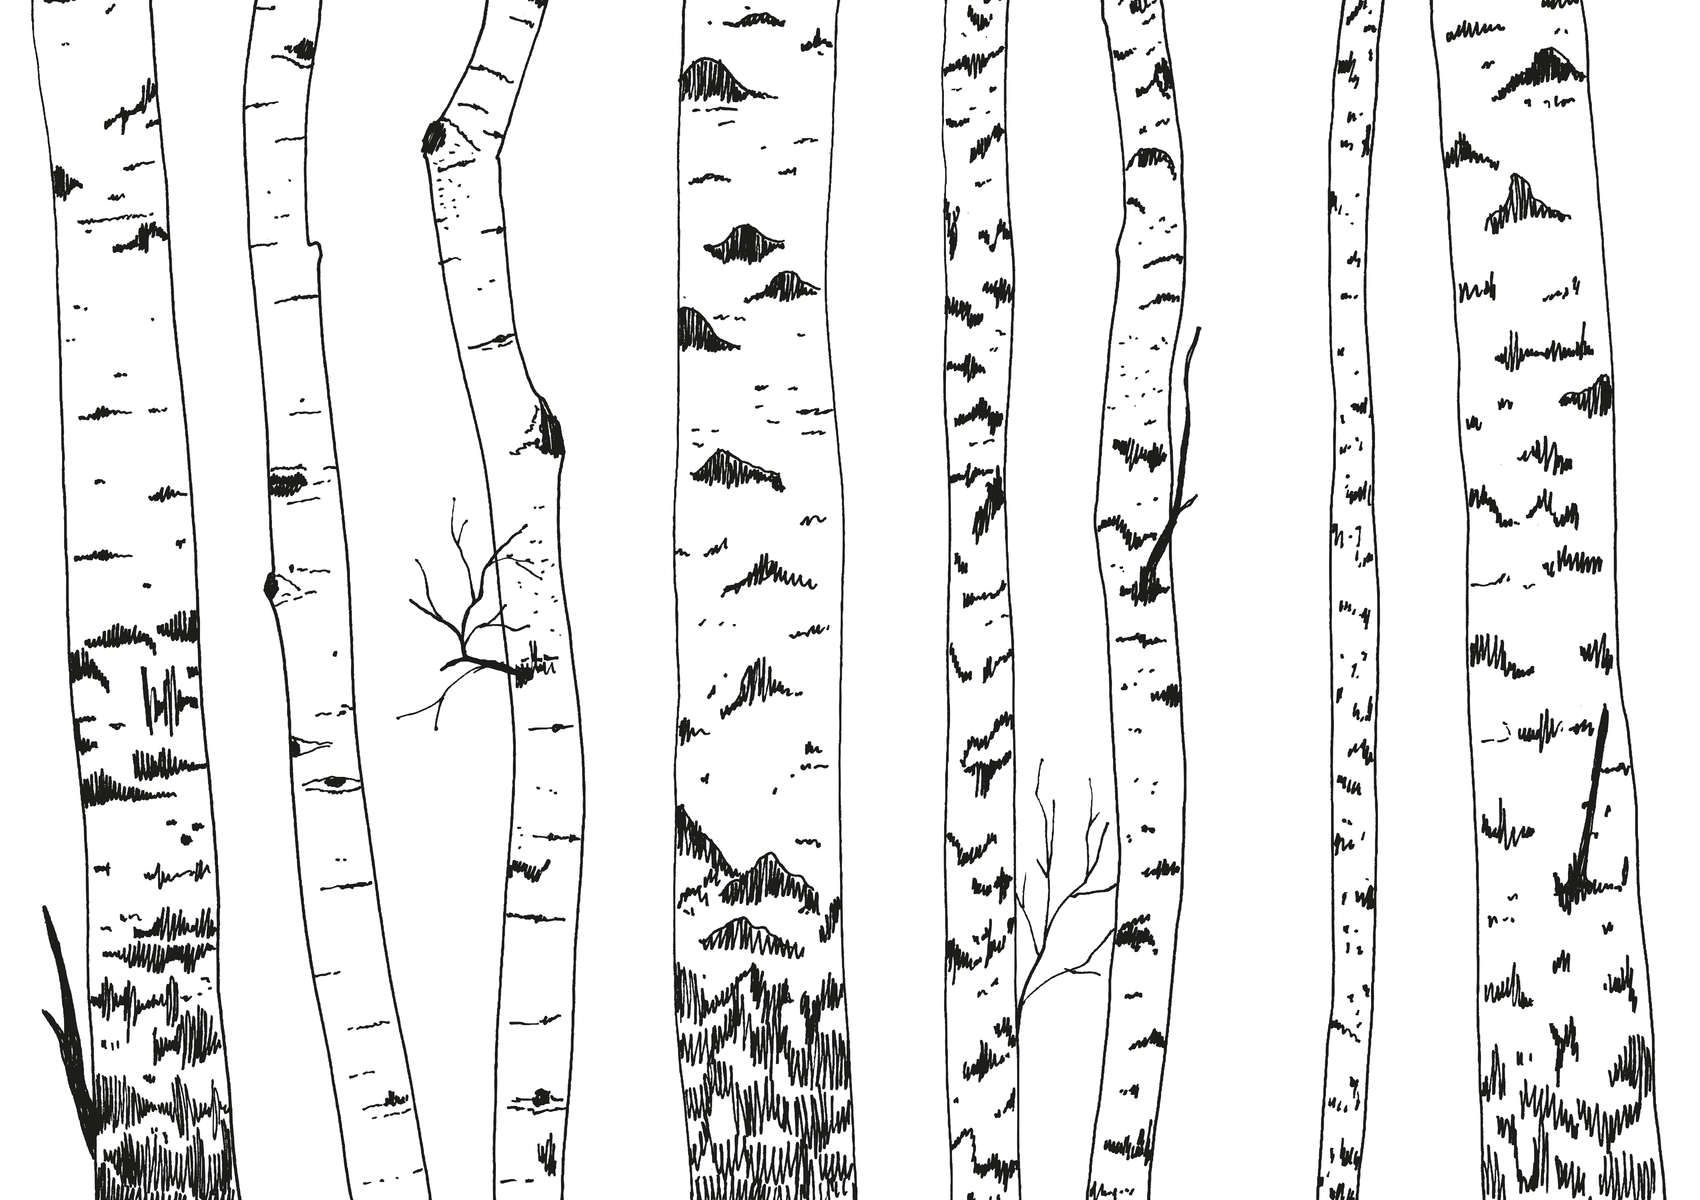             papiers peints à impression numérique forêt de bouleaux dessinée - intissé lisse & nacré
        